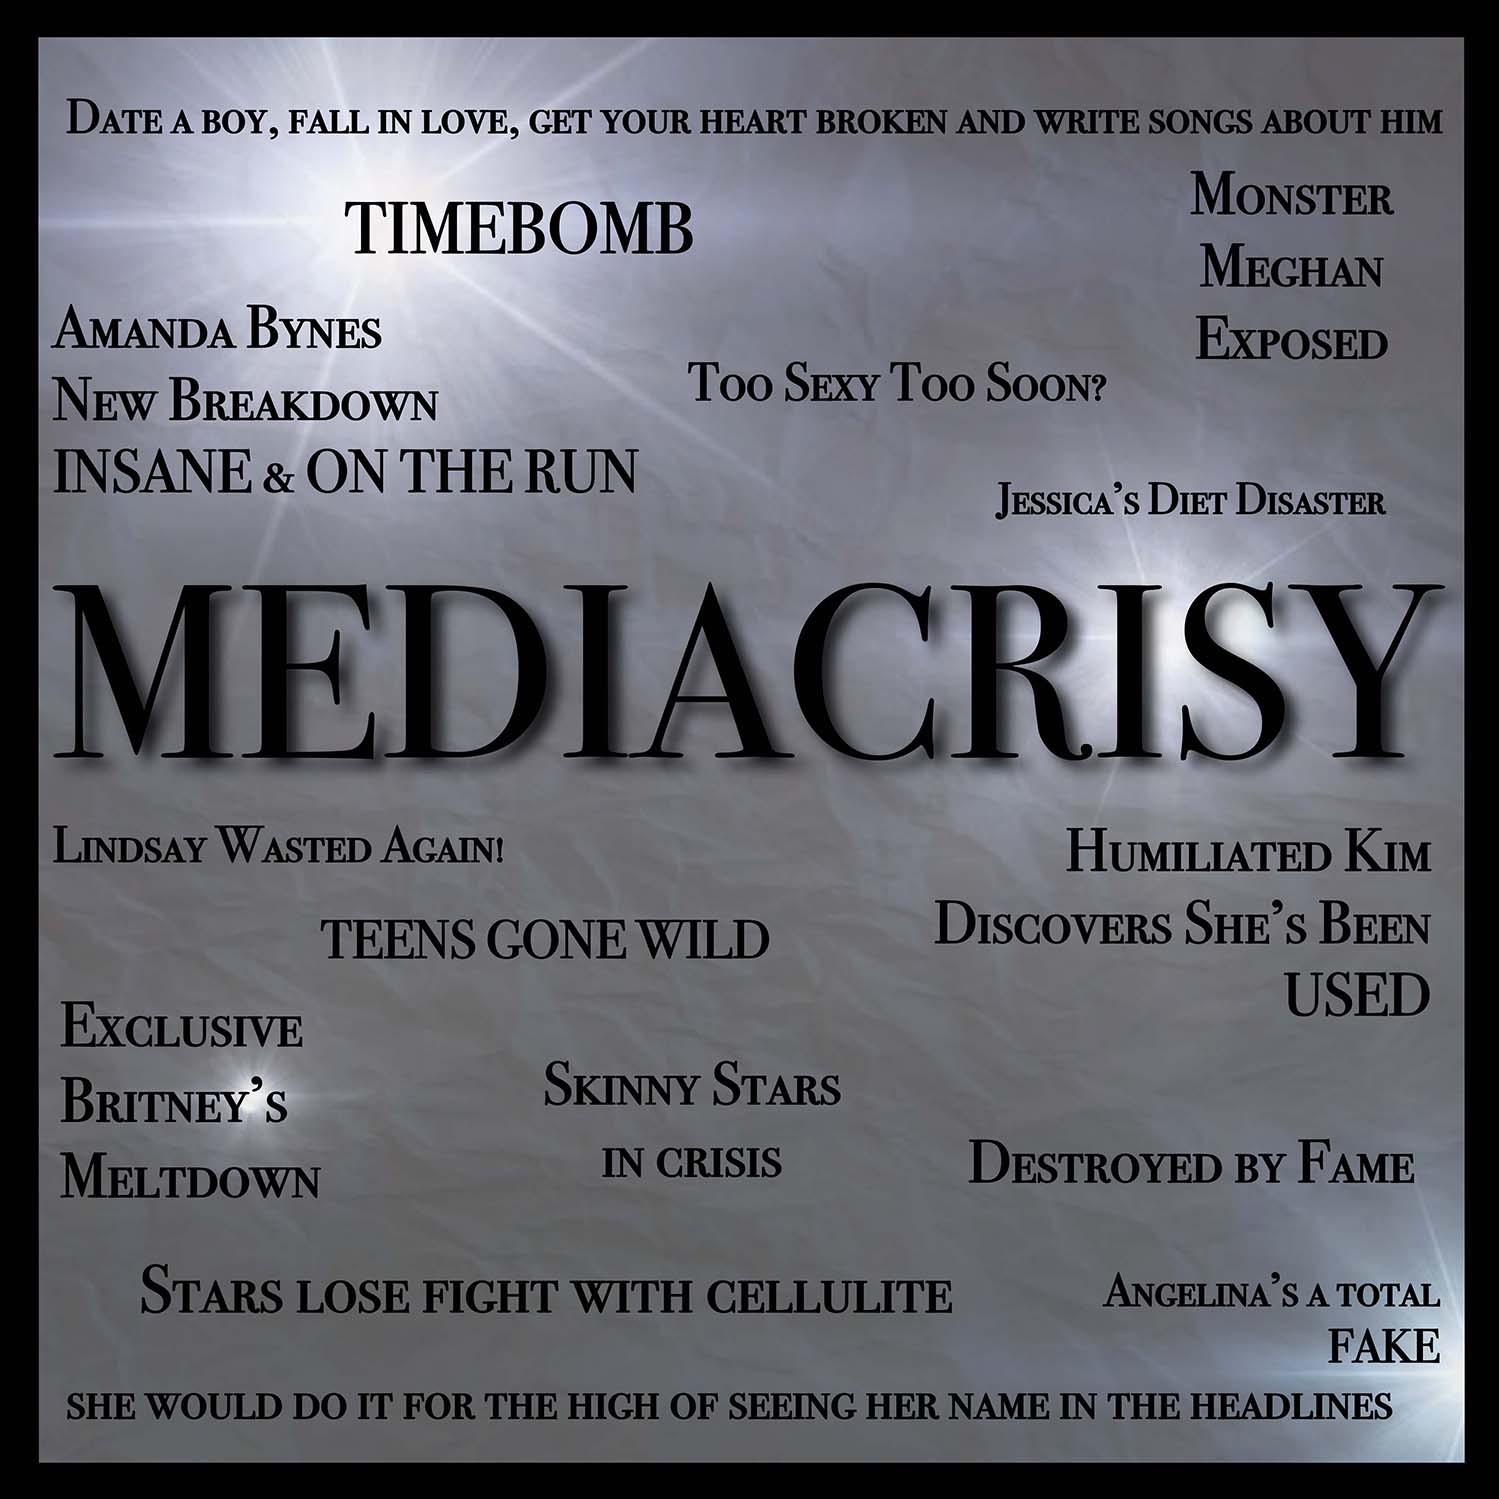 Mediacrisy